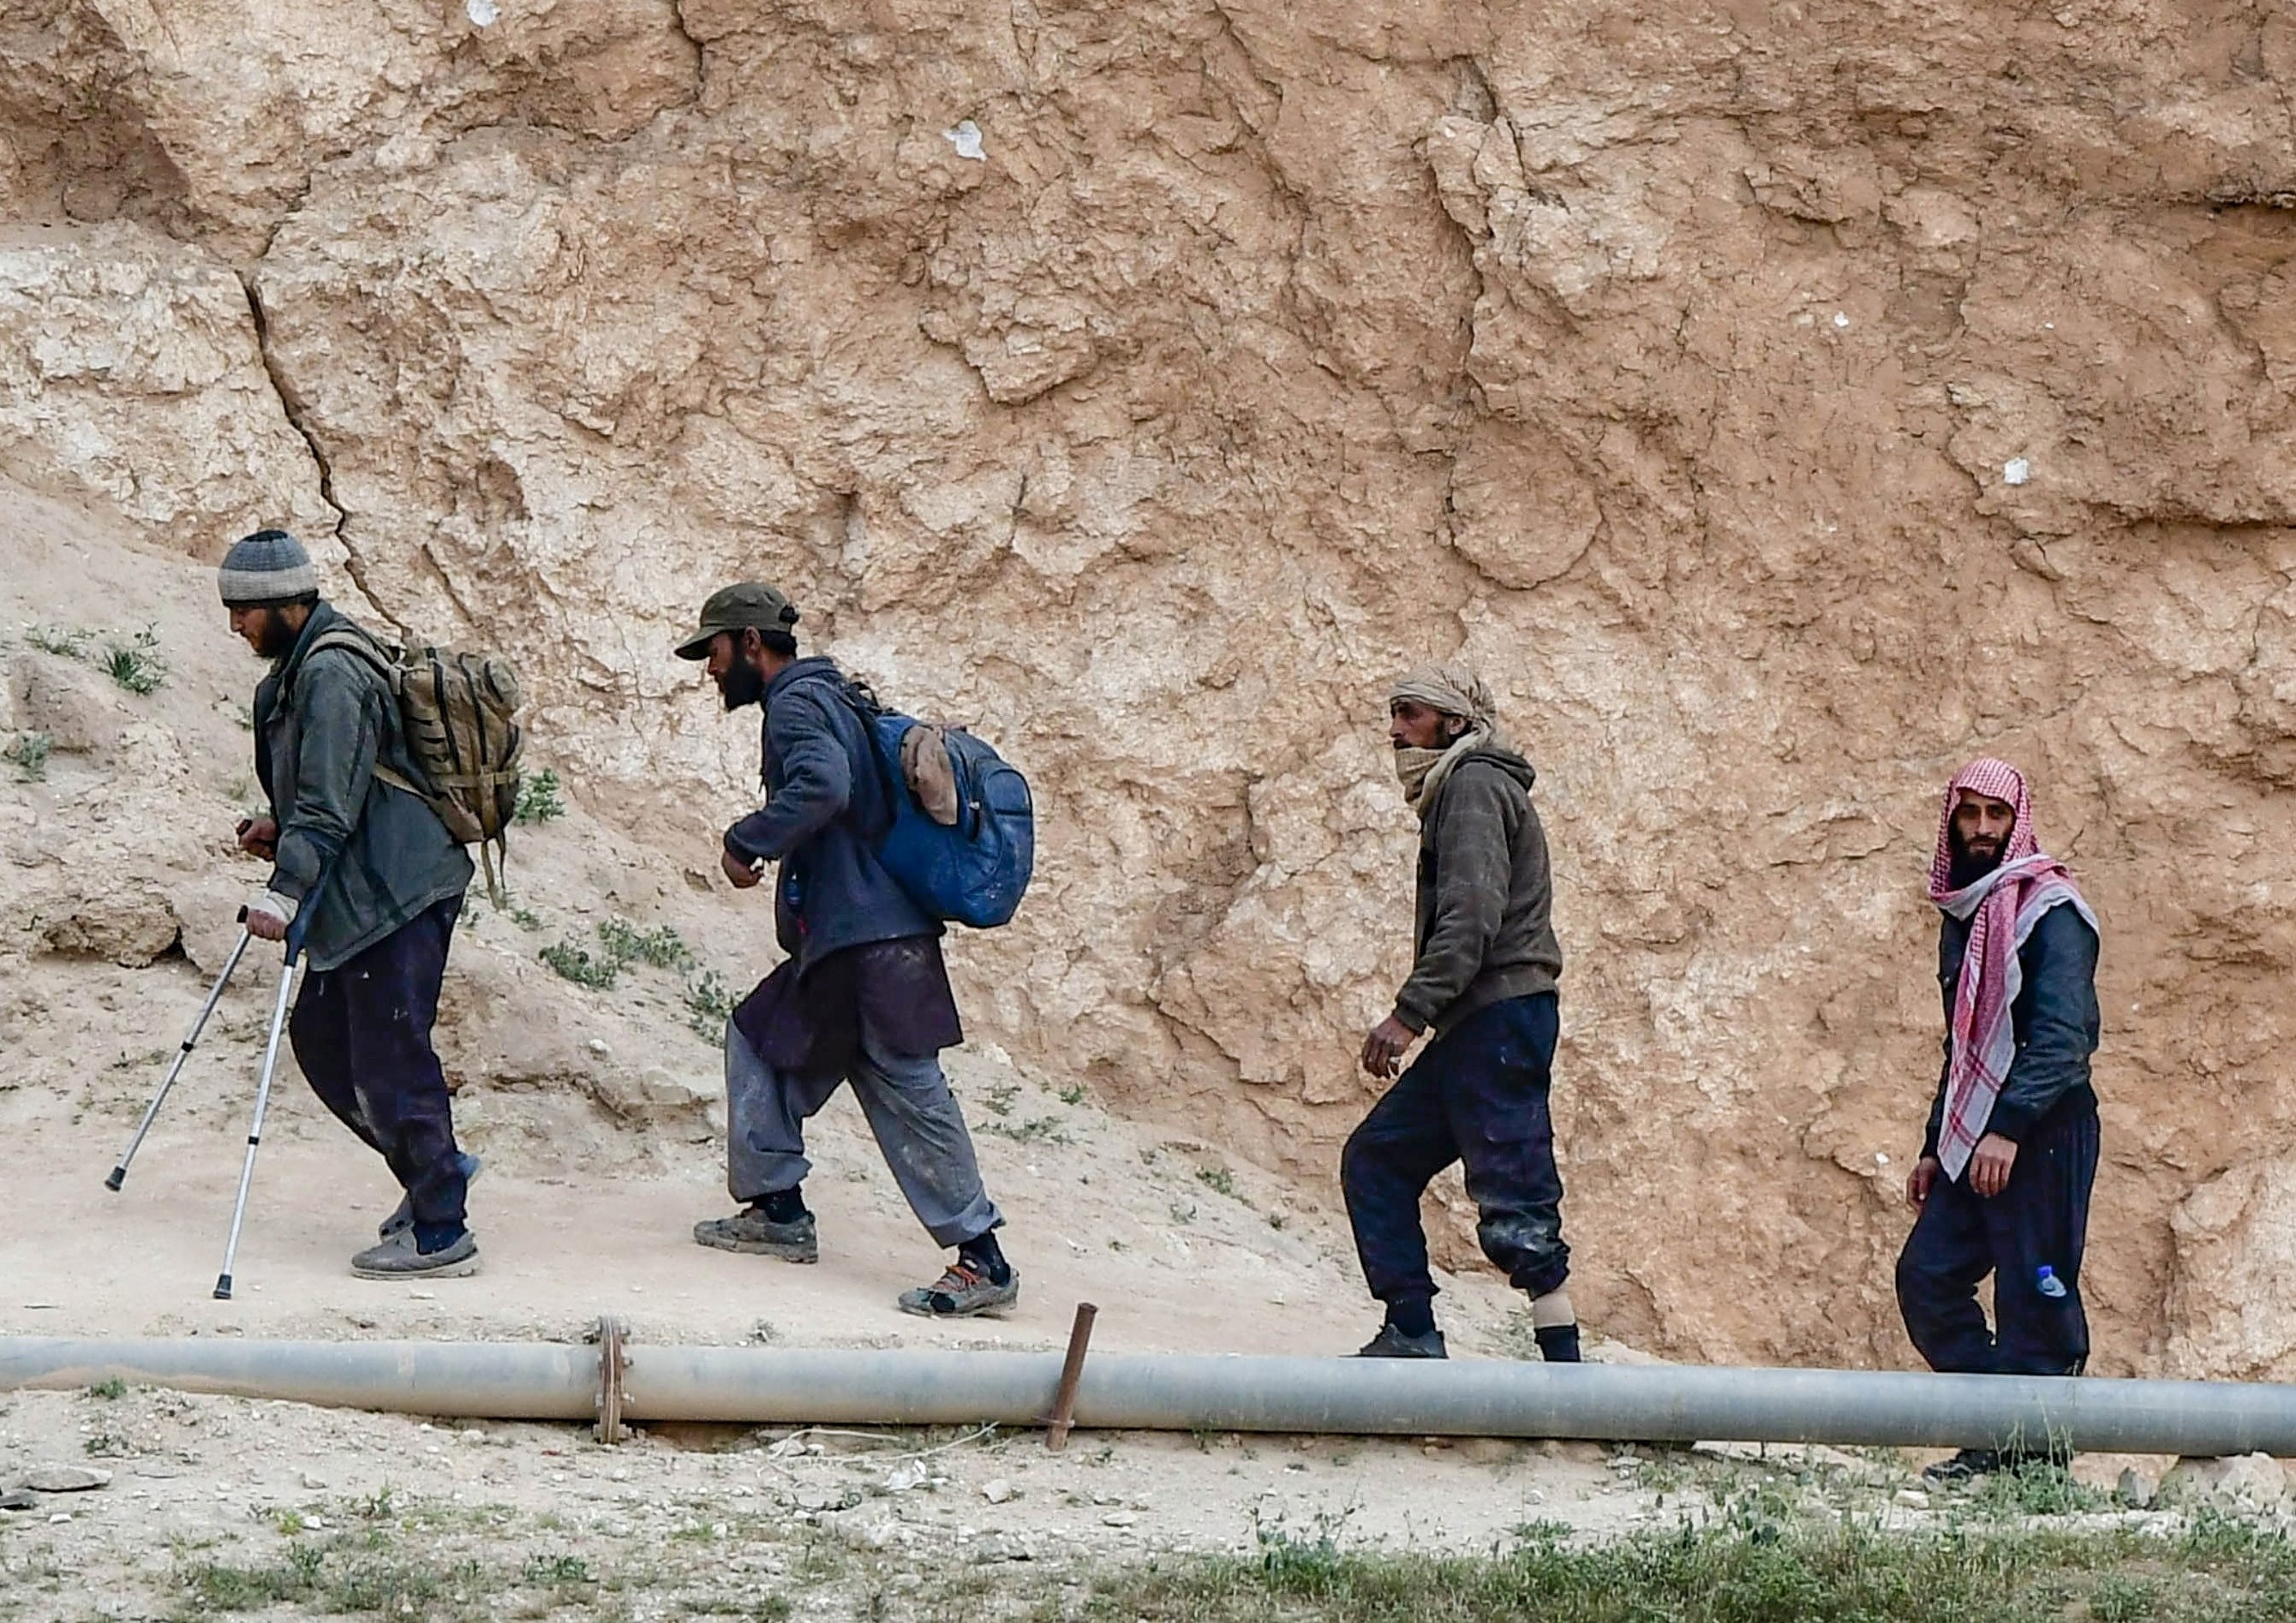 Des membres présumés de l'Etat islamique, sortent du village de Baghouz dans la province syrienne de Deir Ezzor (AFP)